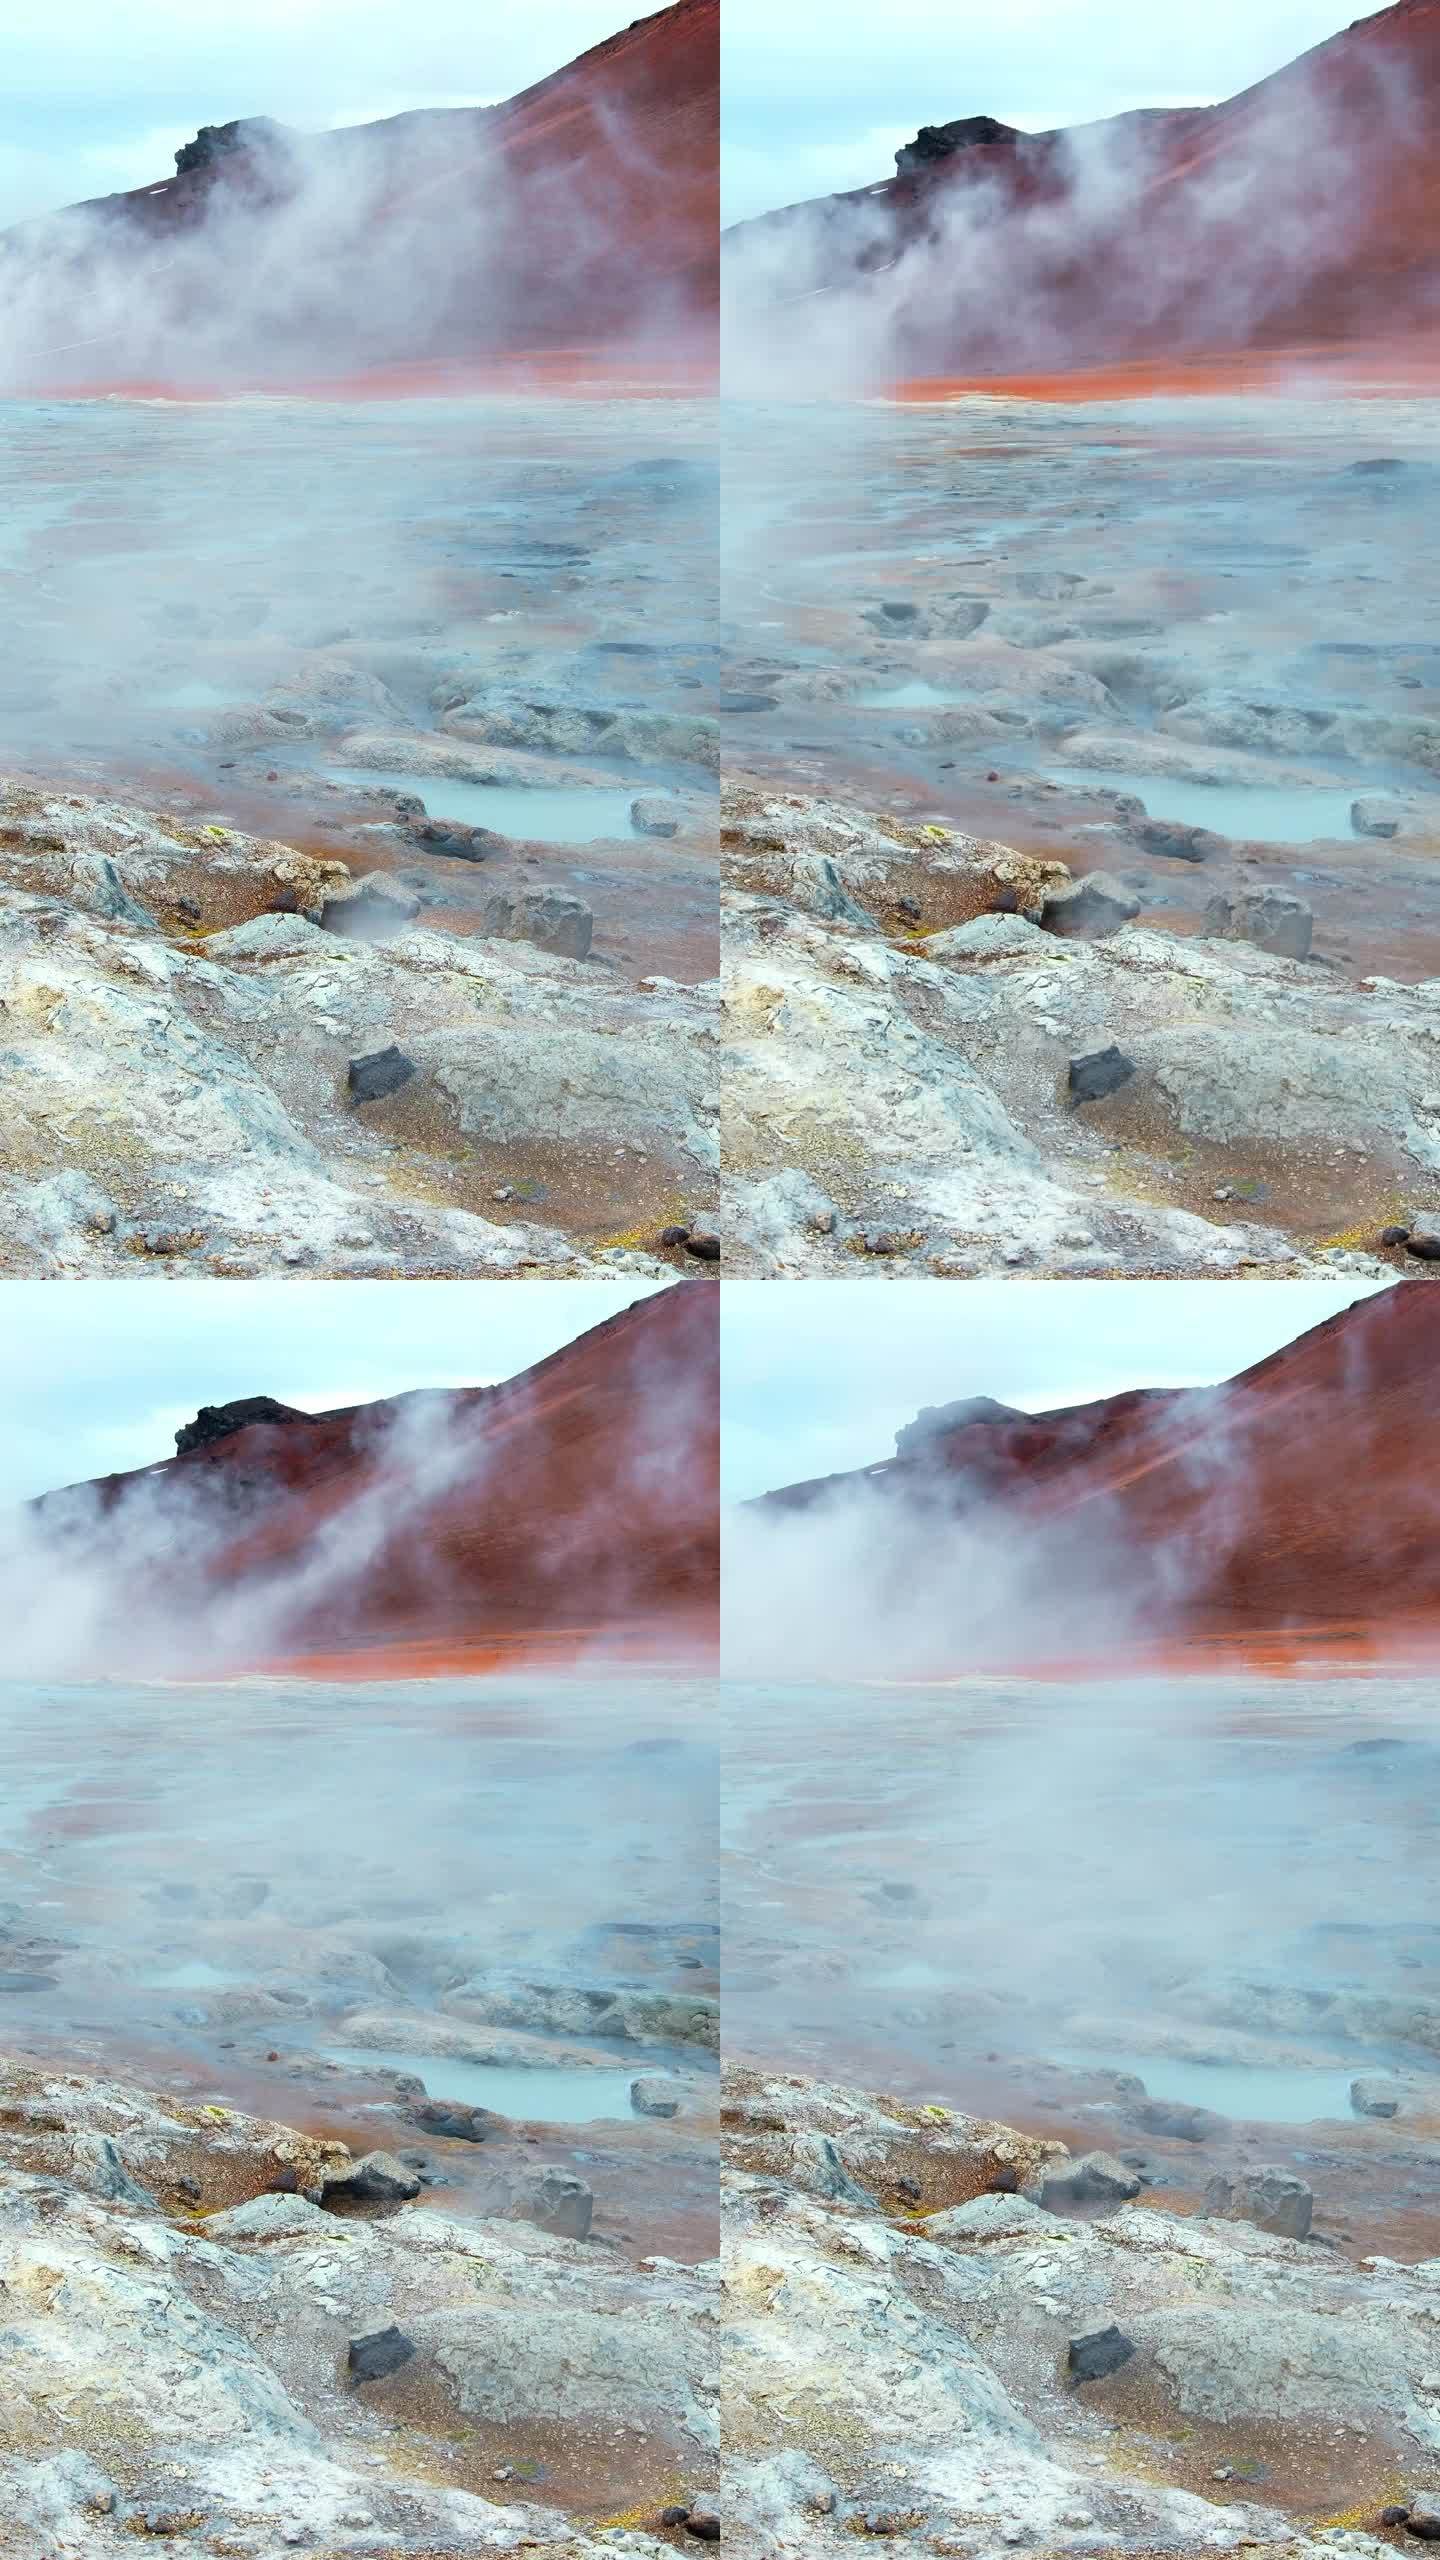 竖屏:冰岛地热区。硫磺谷的火星景观。著名的旅游景点Hverir。Myvatn湖附近真正的火山活动。社